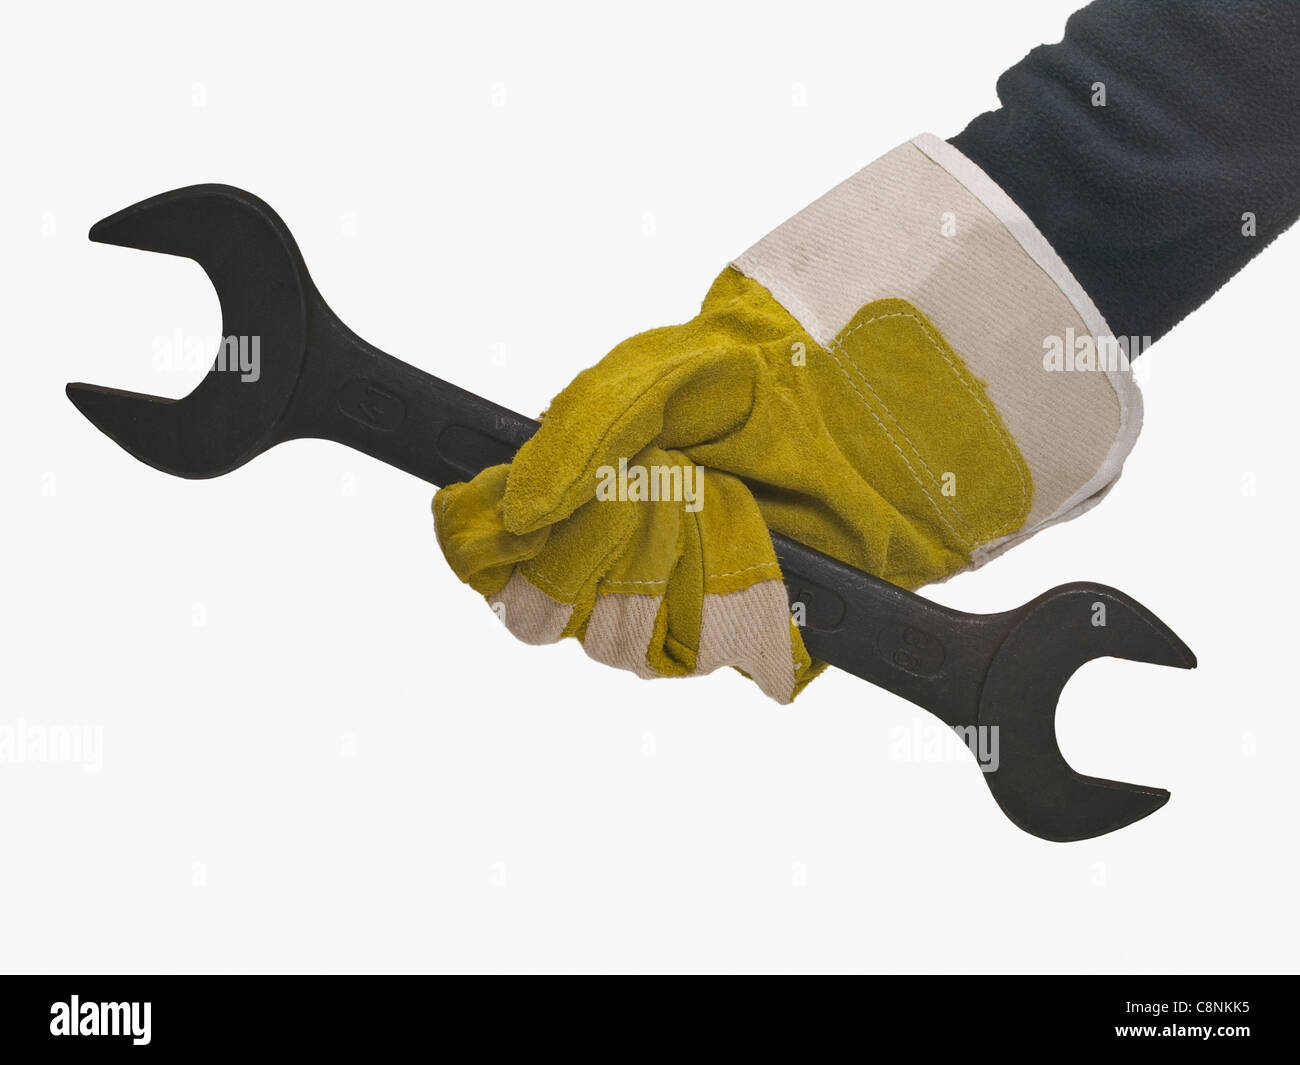 Une clé mixte sont tenues à la main avec des gants de protection Banque D'Images